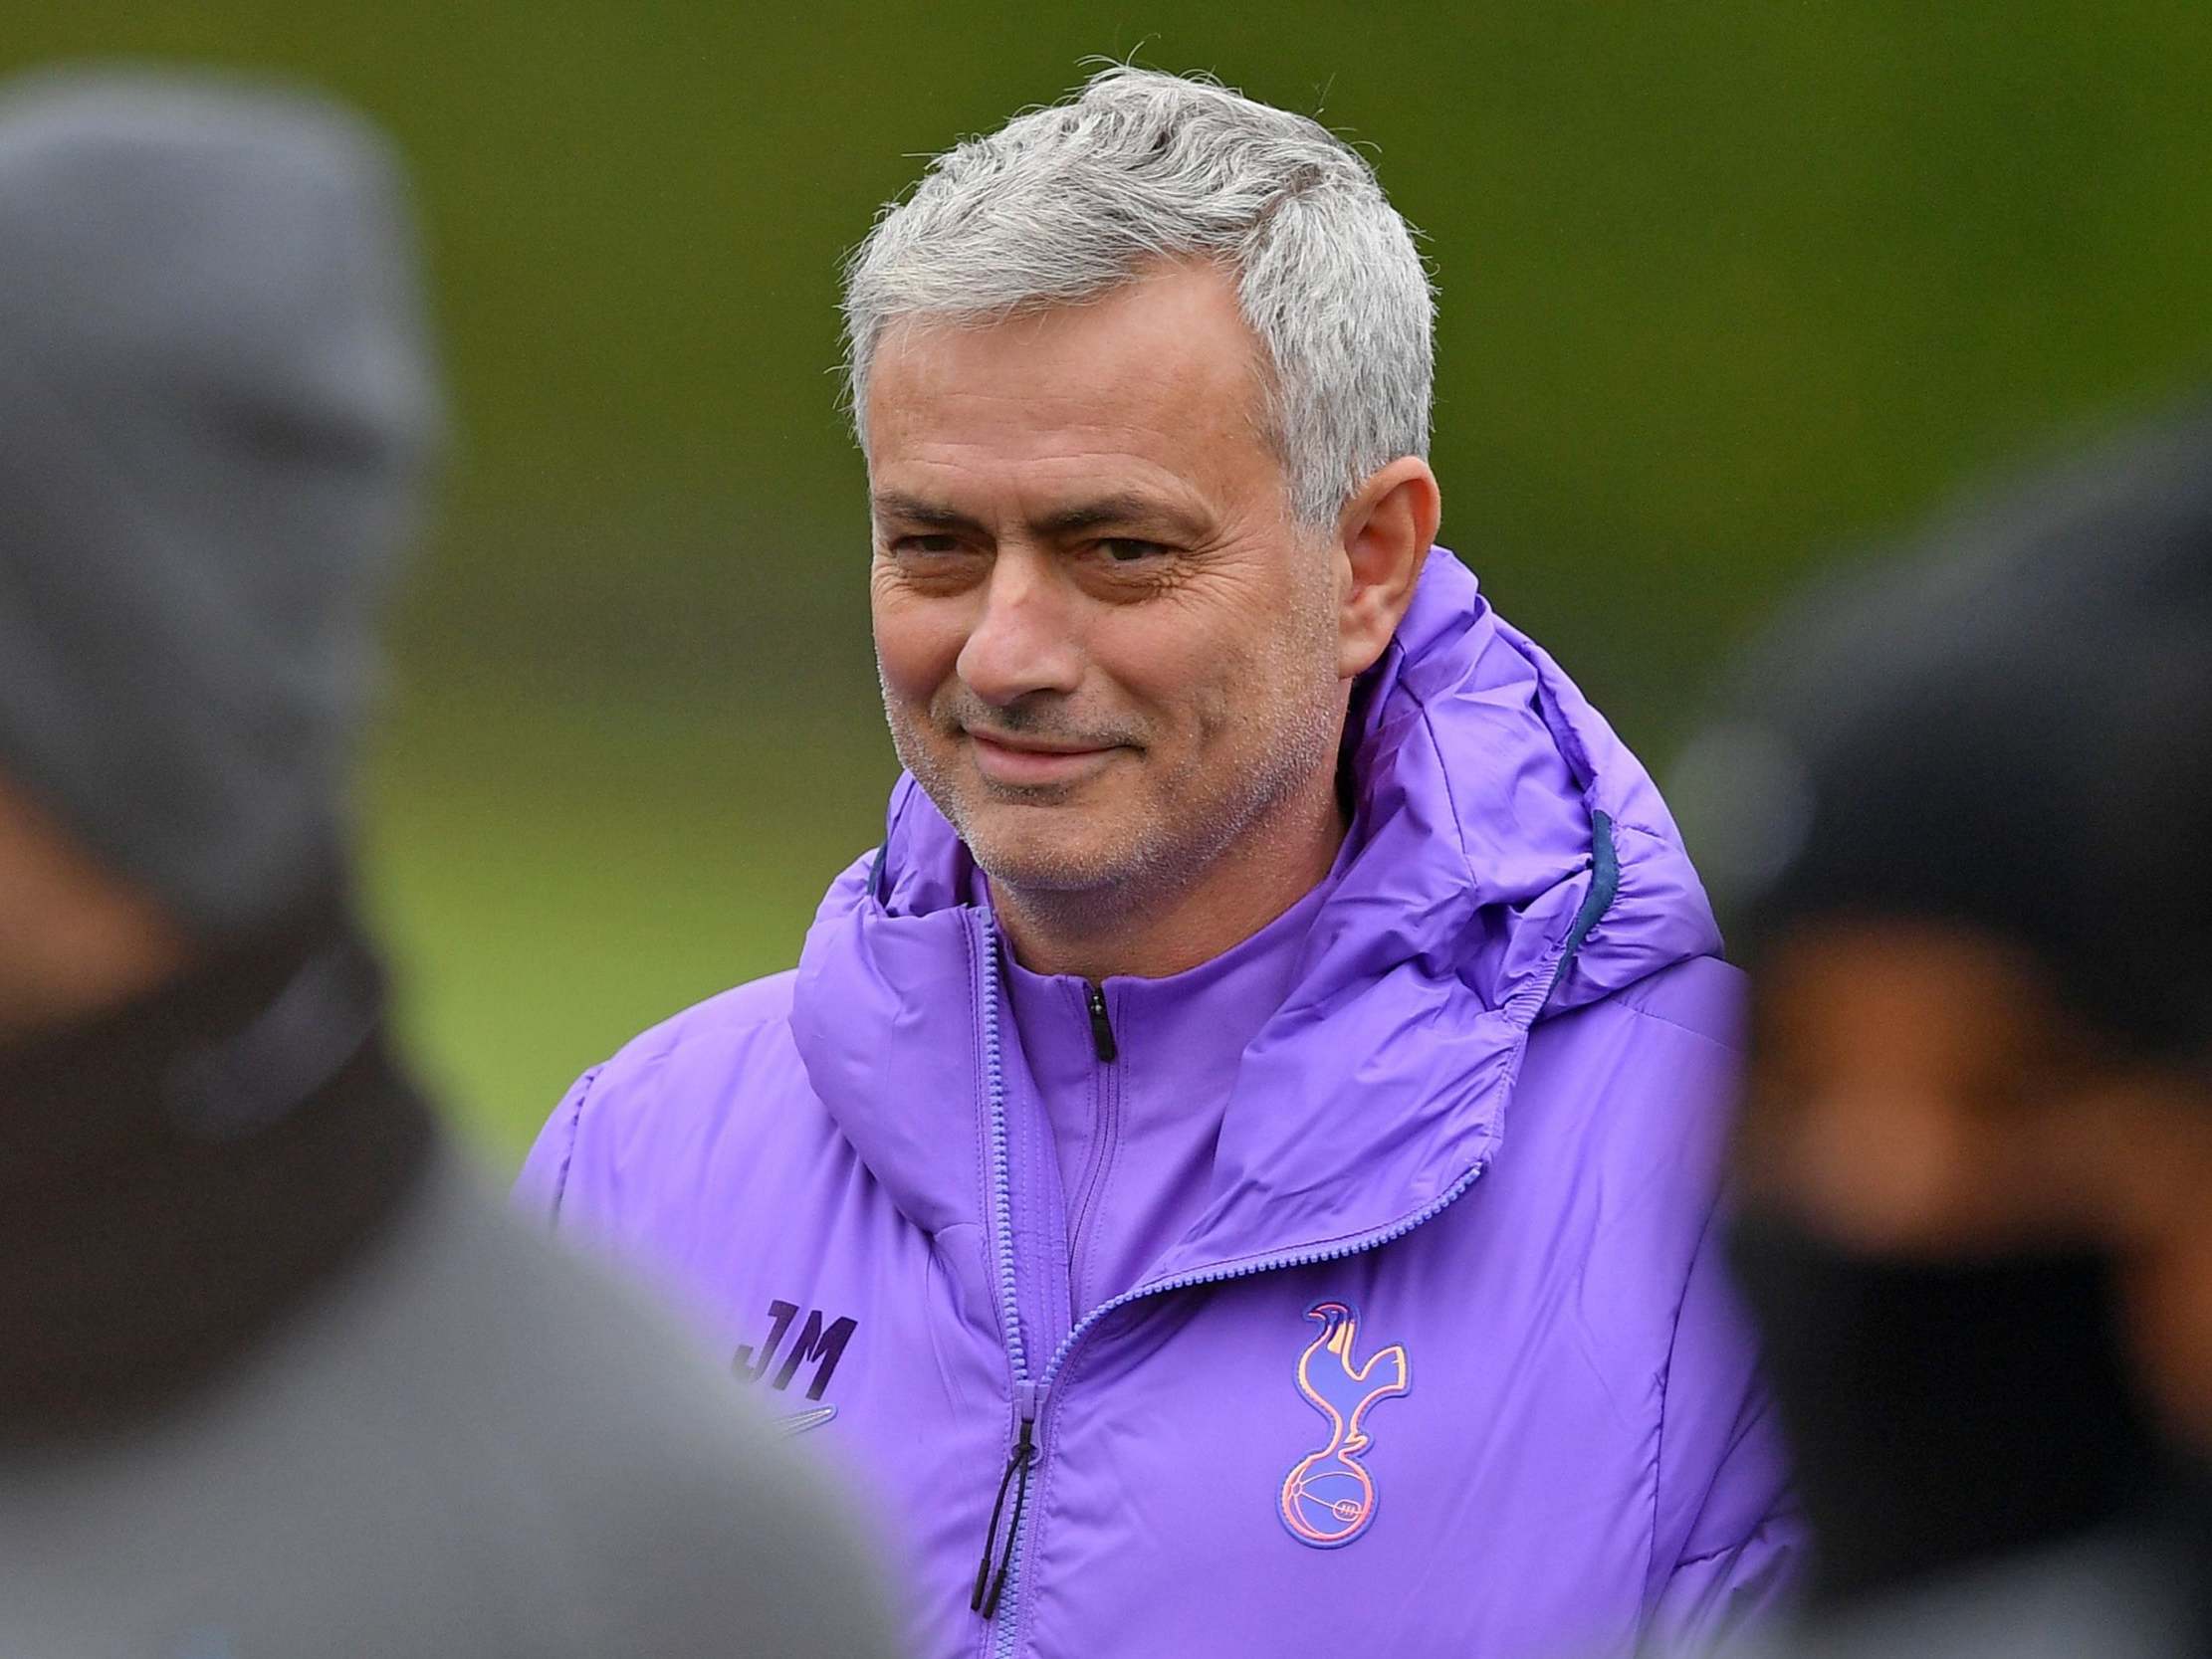 Tottenham Hotspur head coach Jose Mourinho smiles as he takes a team training session